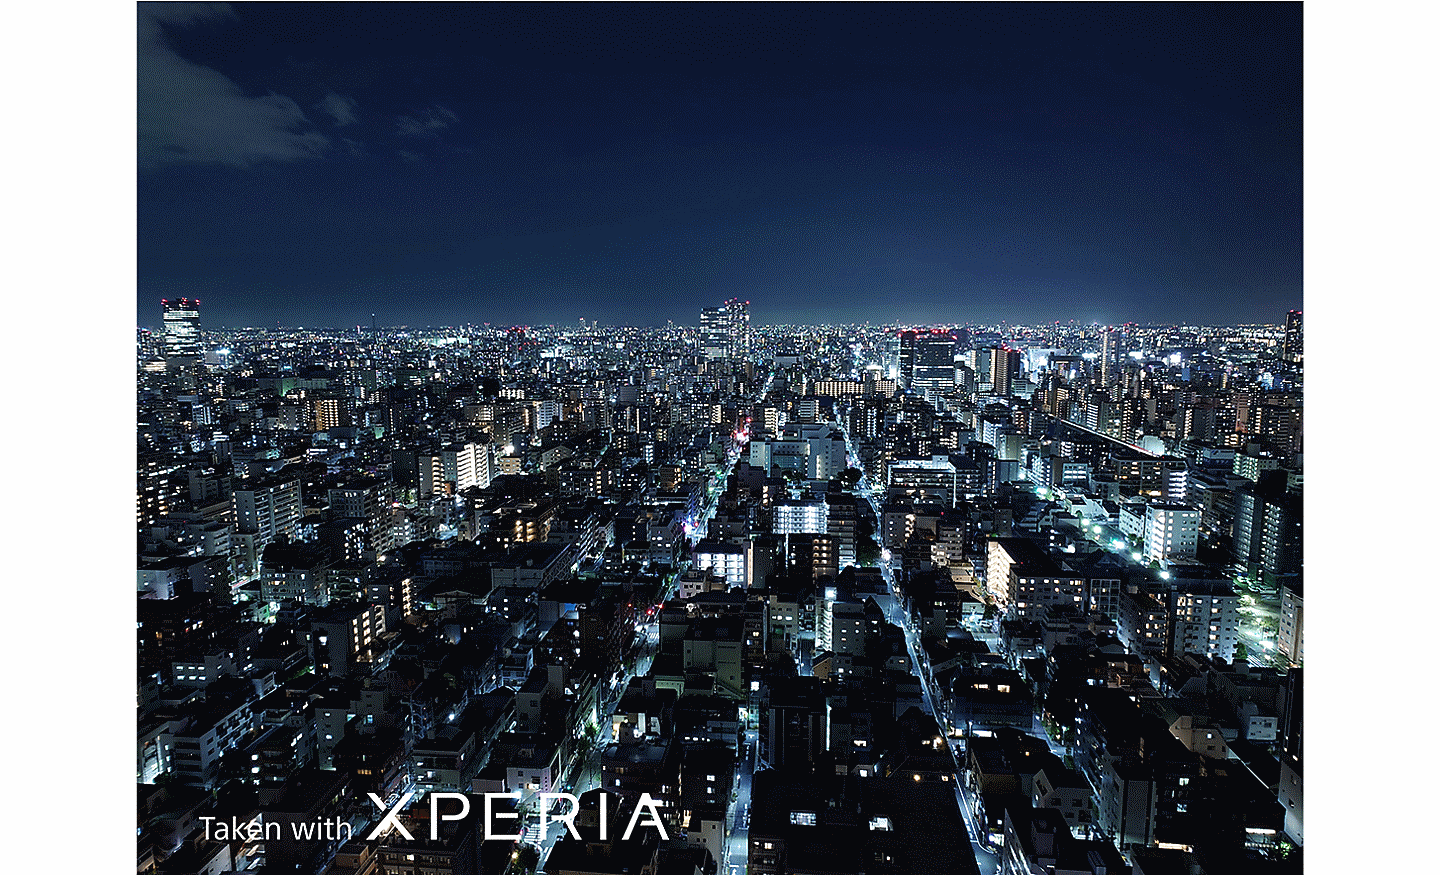 Rozľahlá nočná panoráma mesta zachytená z výšky. Na fotografii sa nachádza text Taken with XPERIA.